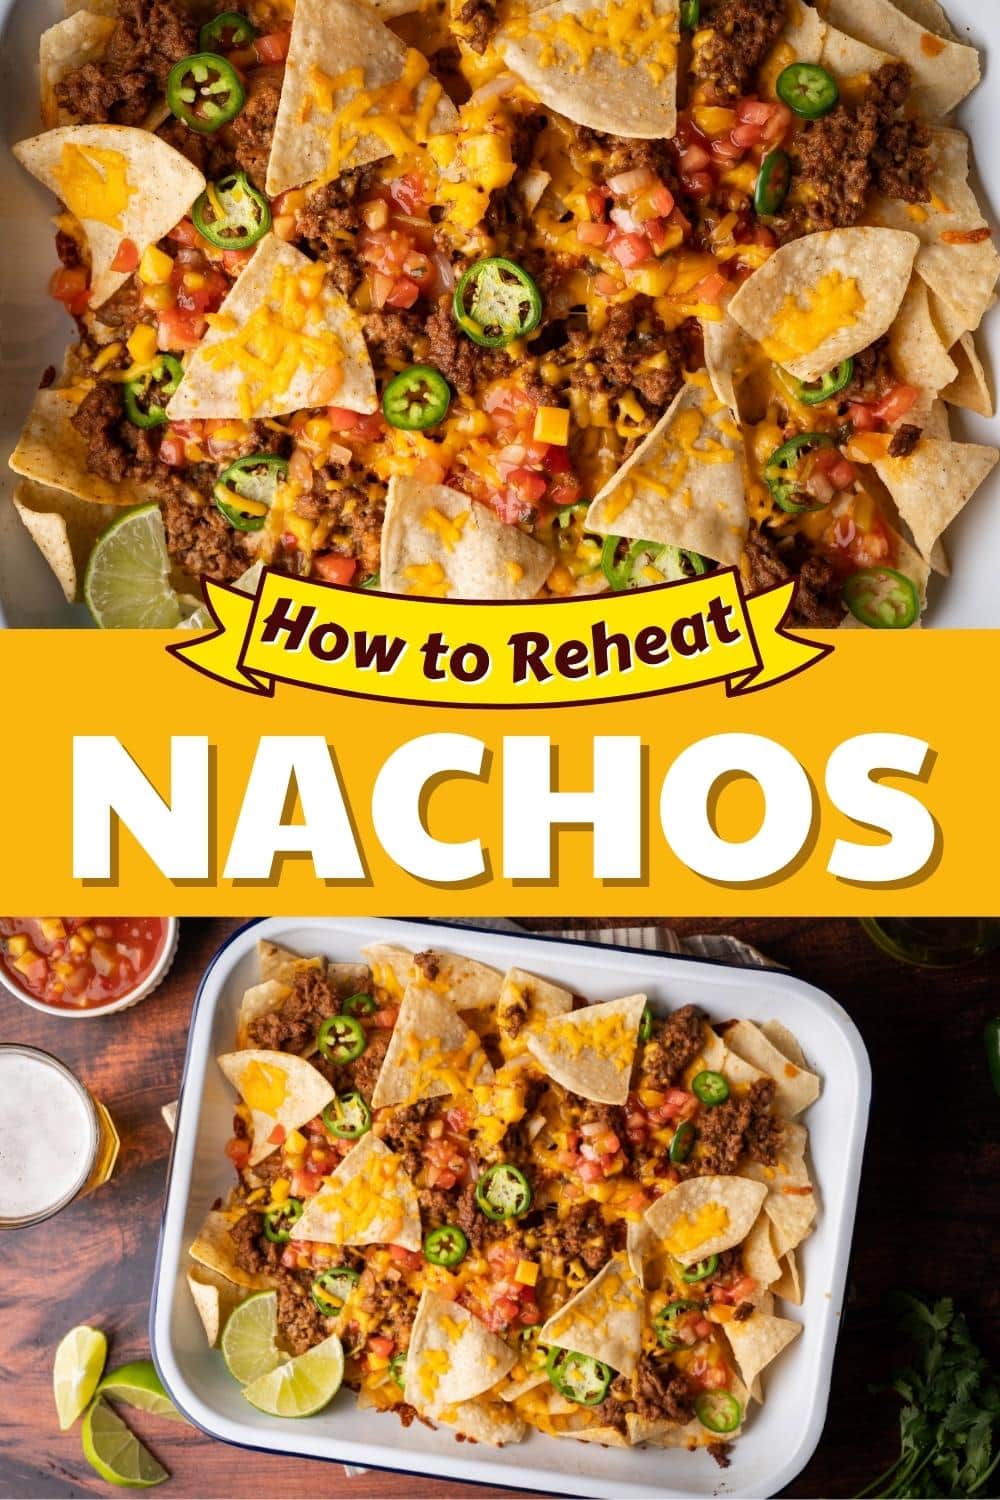 How to Reheat Nachos (5 Ways to Keep Them Crispy) - Insanely Good